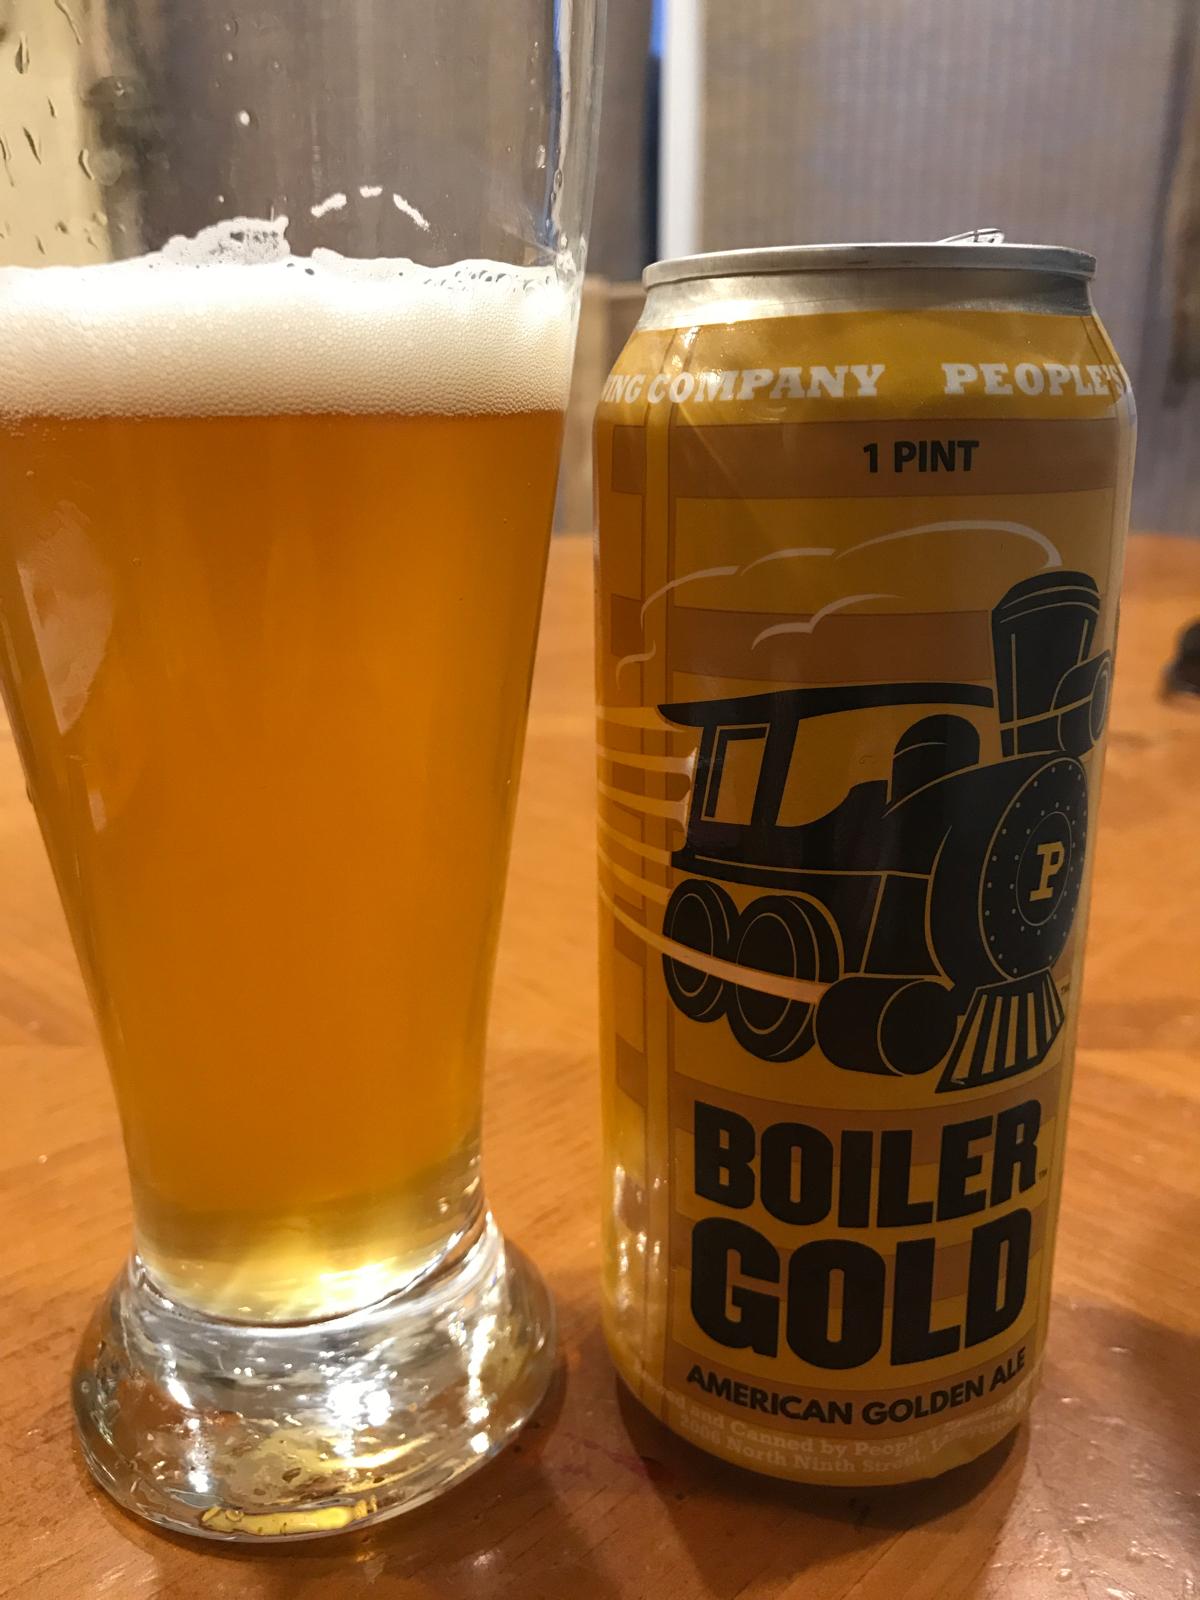 Boiler Gold